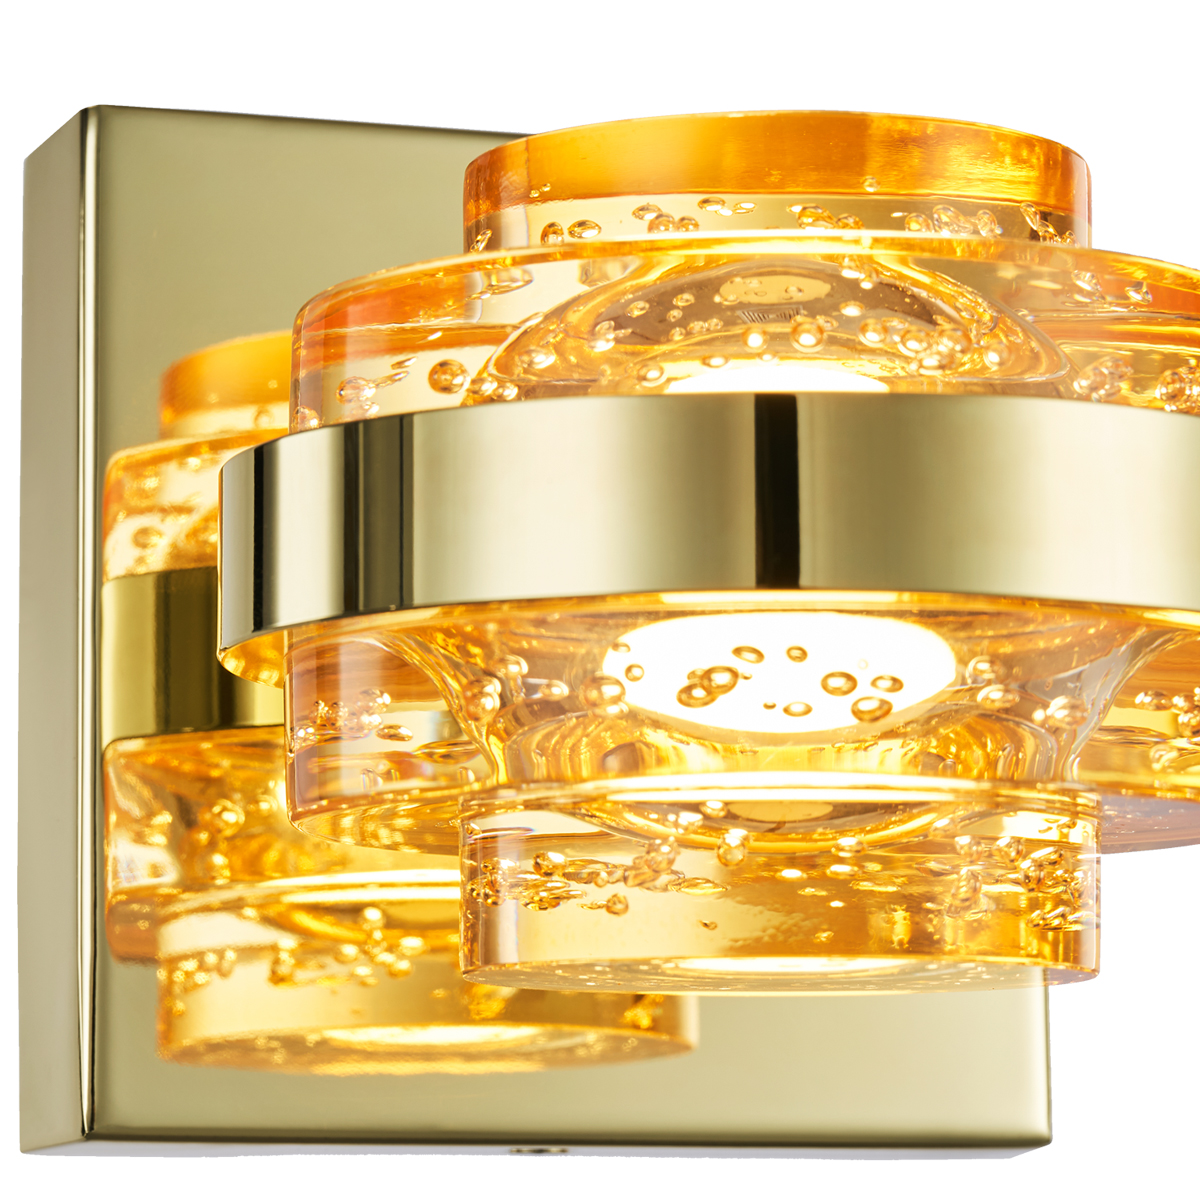 Настенный светильник MB22030002-1A gold/champagne